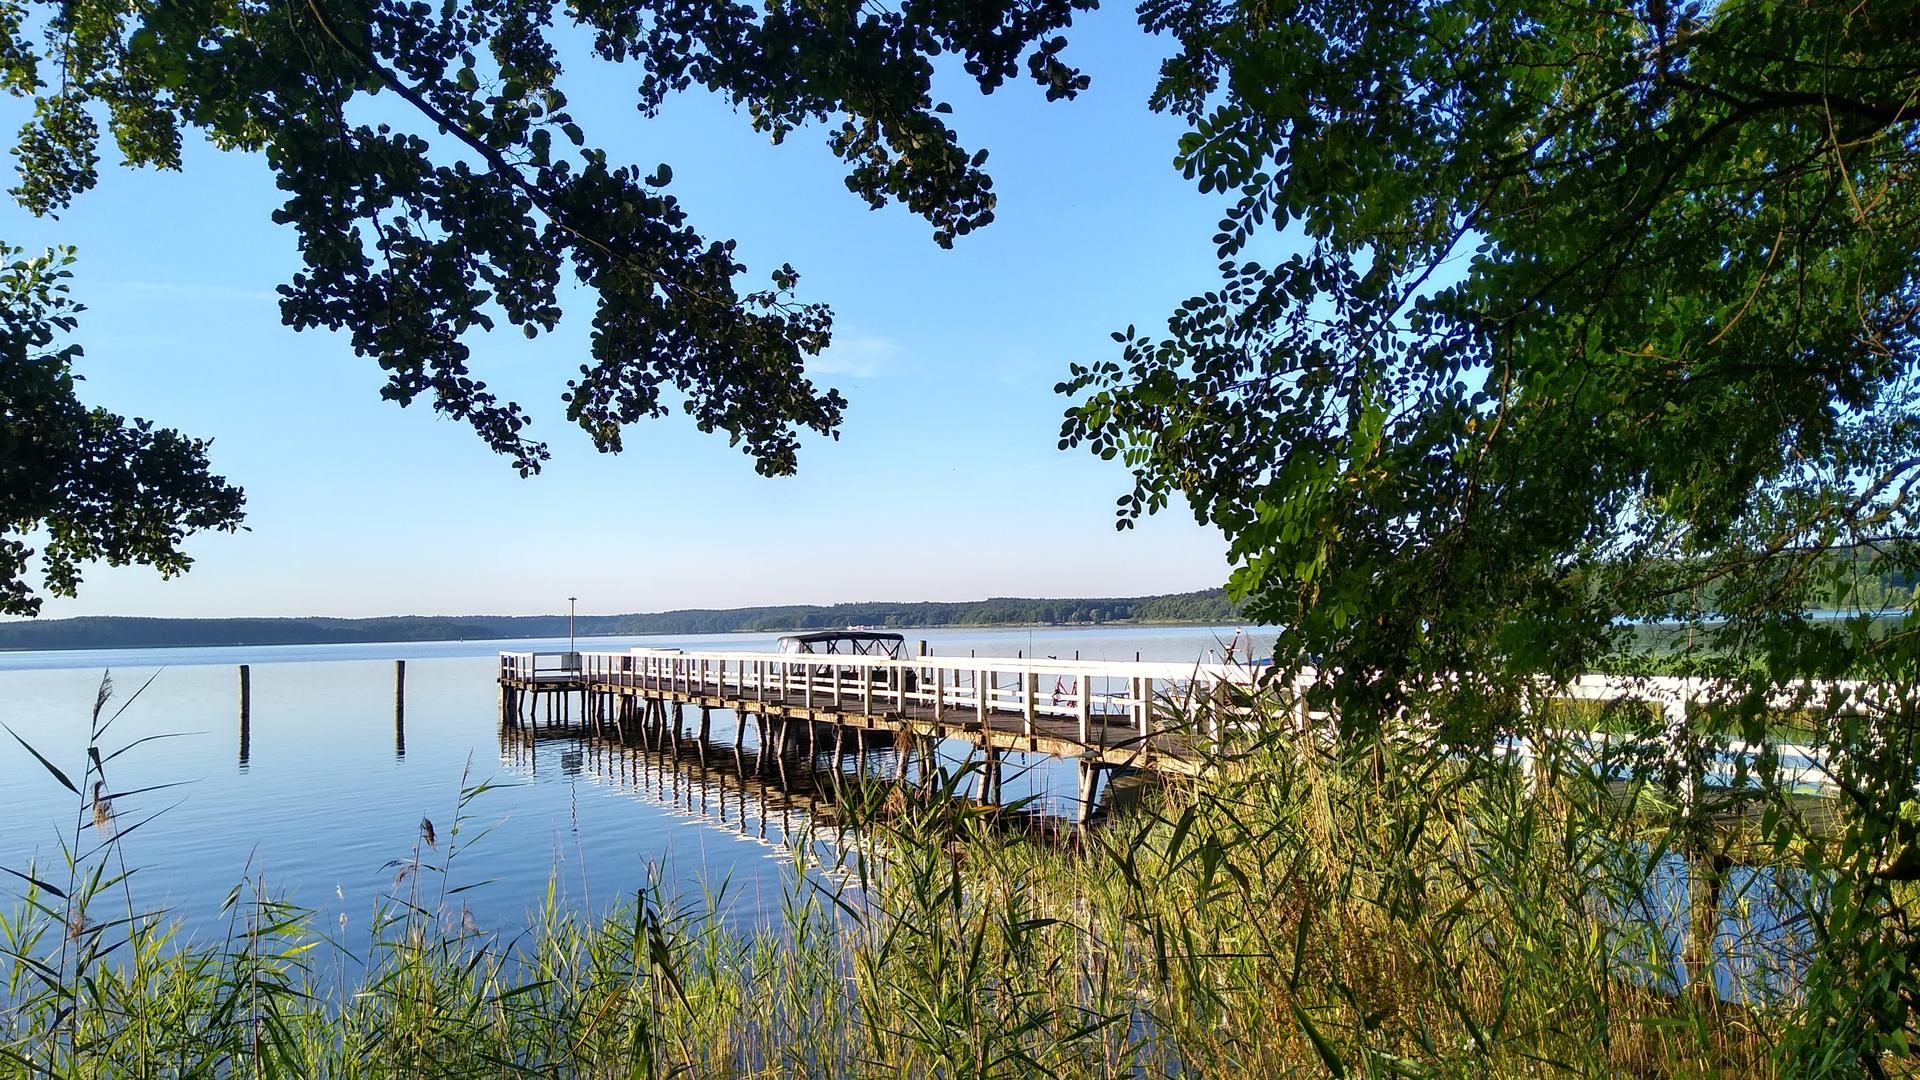 Plauer See in Mecklenburg-Vorpommern von Irene Ohnheiser aus Oberderdingen.
